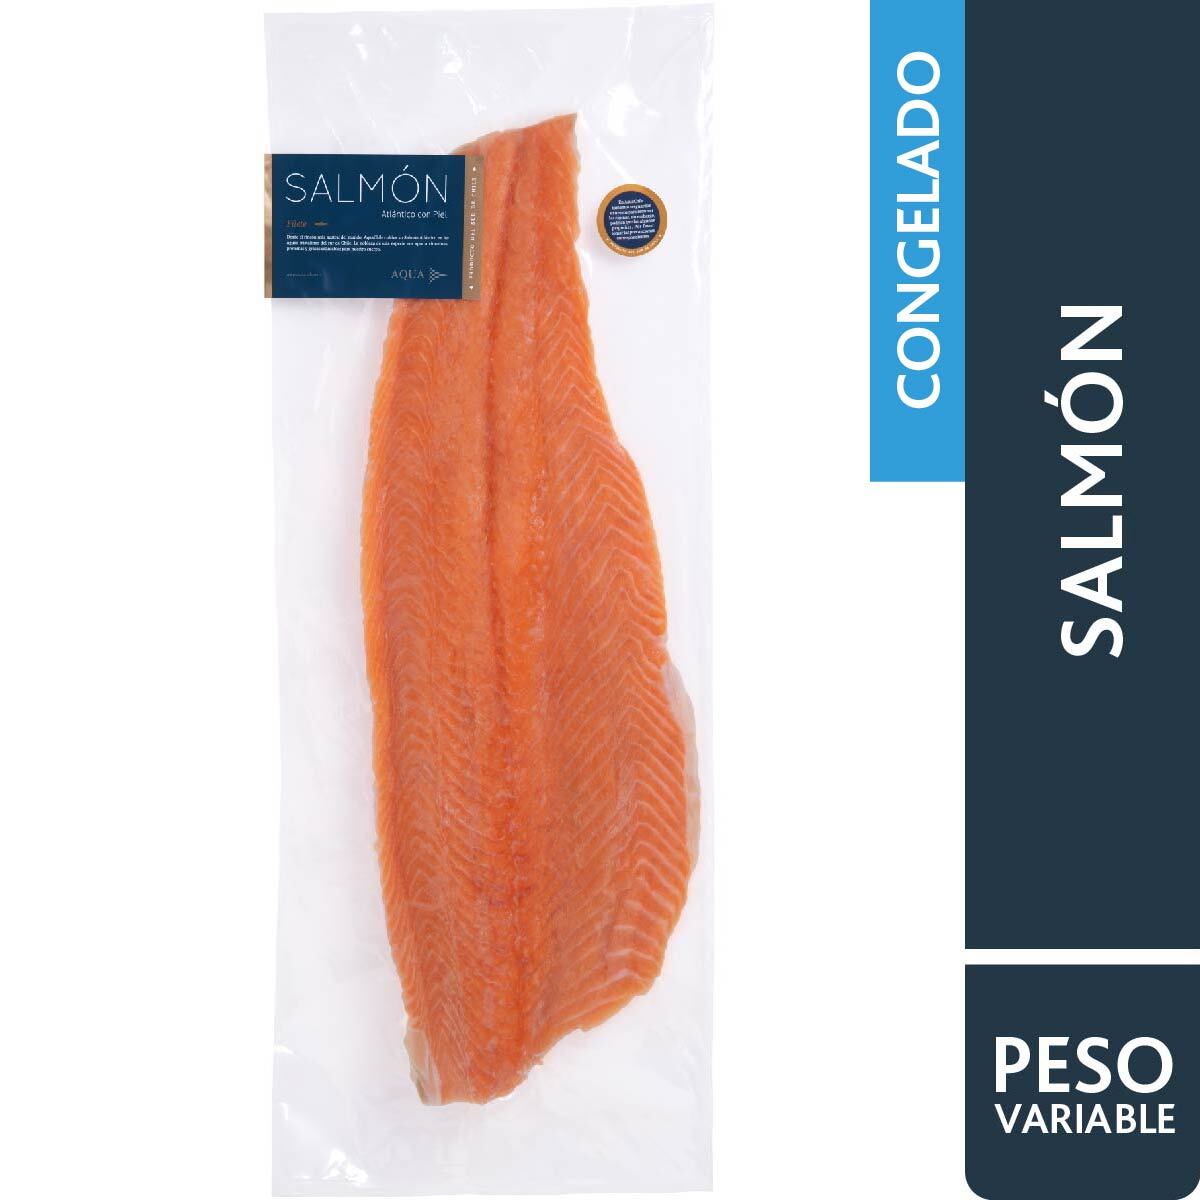 Filete de Salmon con Piel